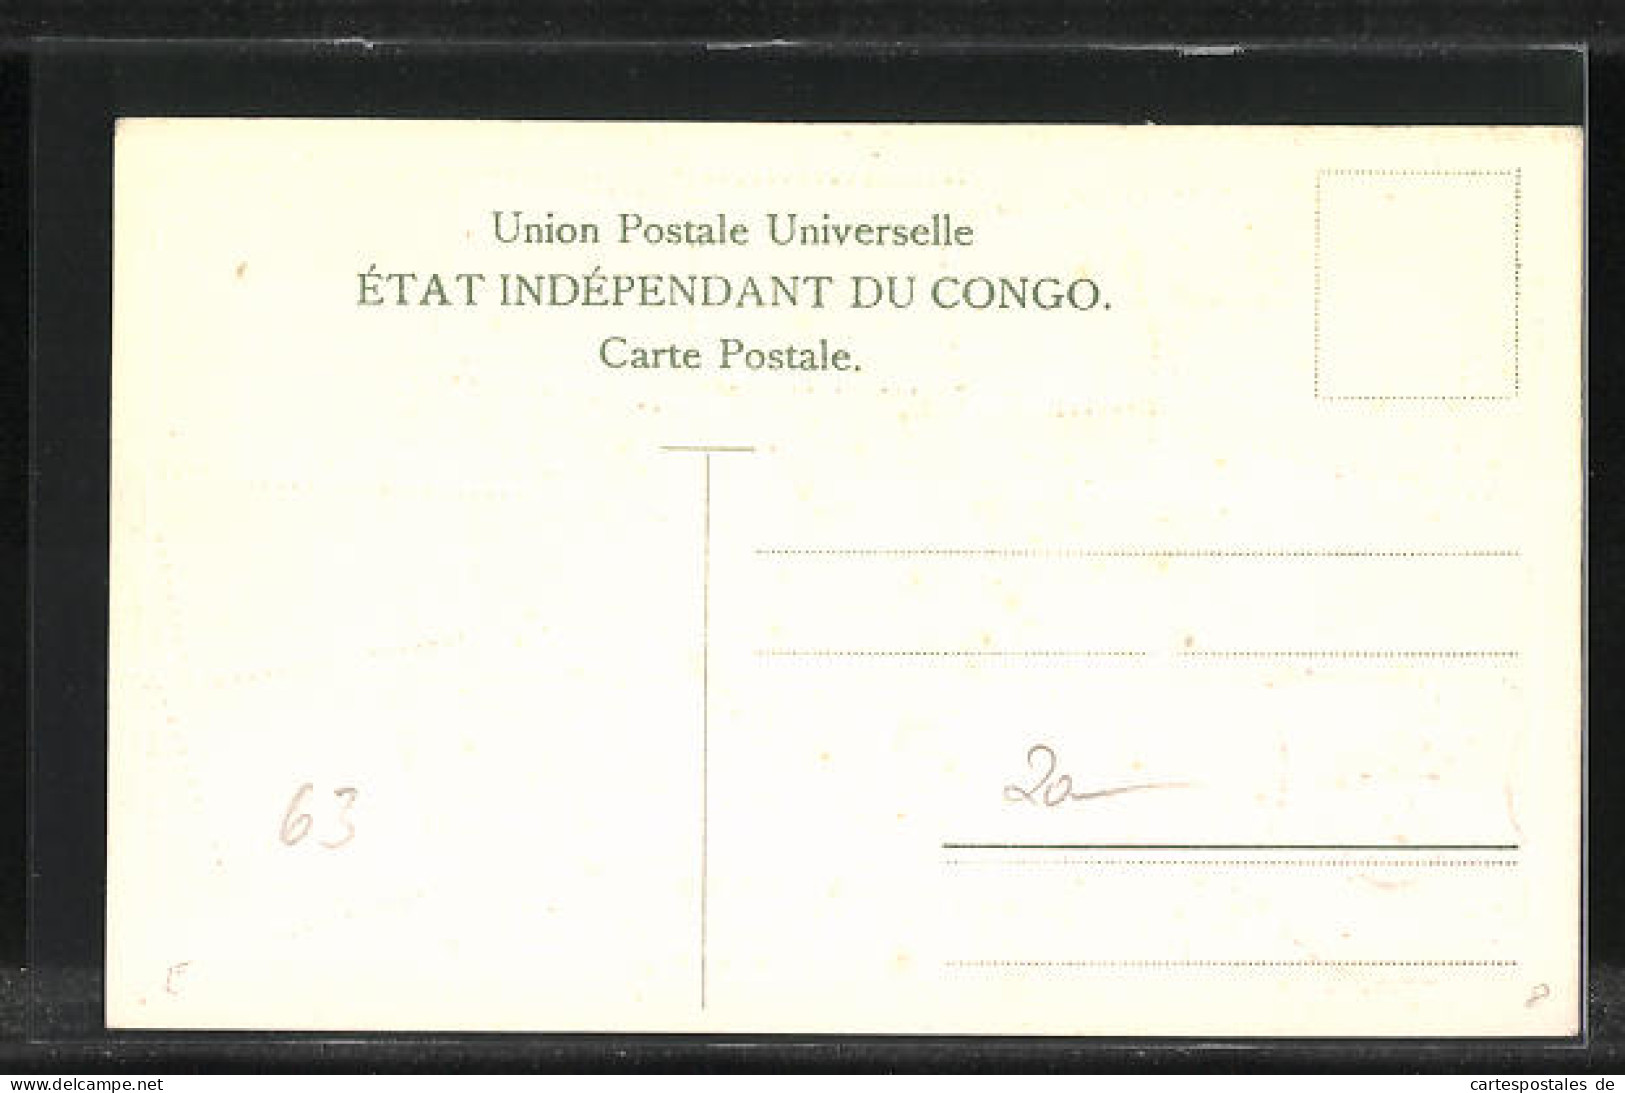 Präge-Künstler-AK Congo, Briefmarken Und Wappen  - Timbres (représentations)